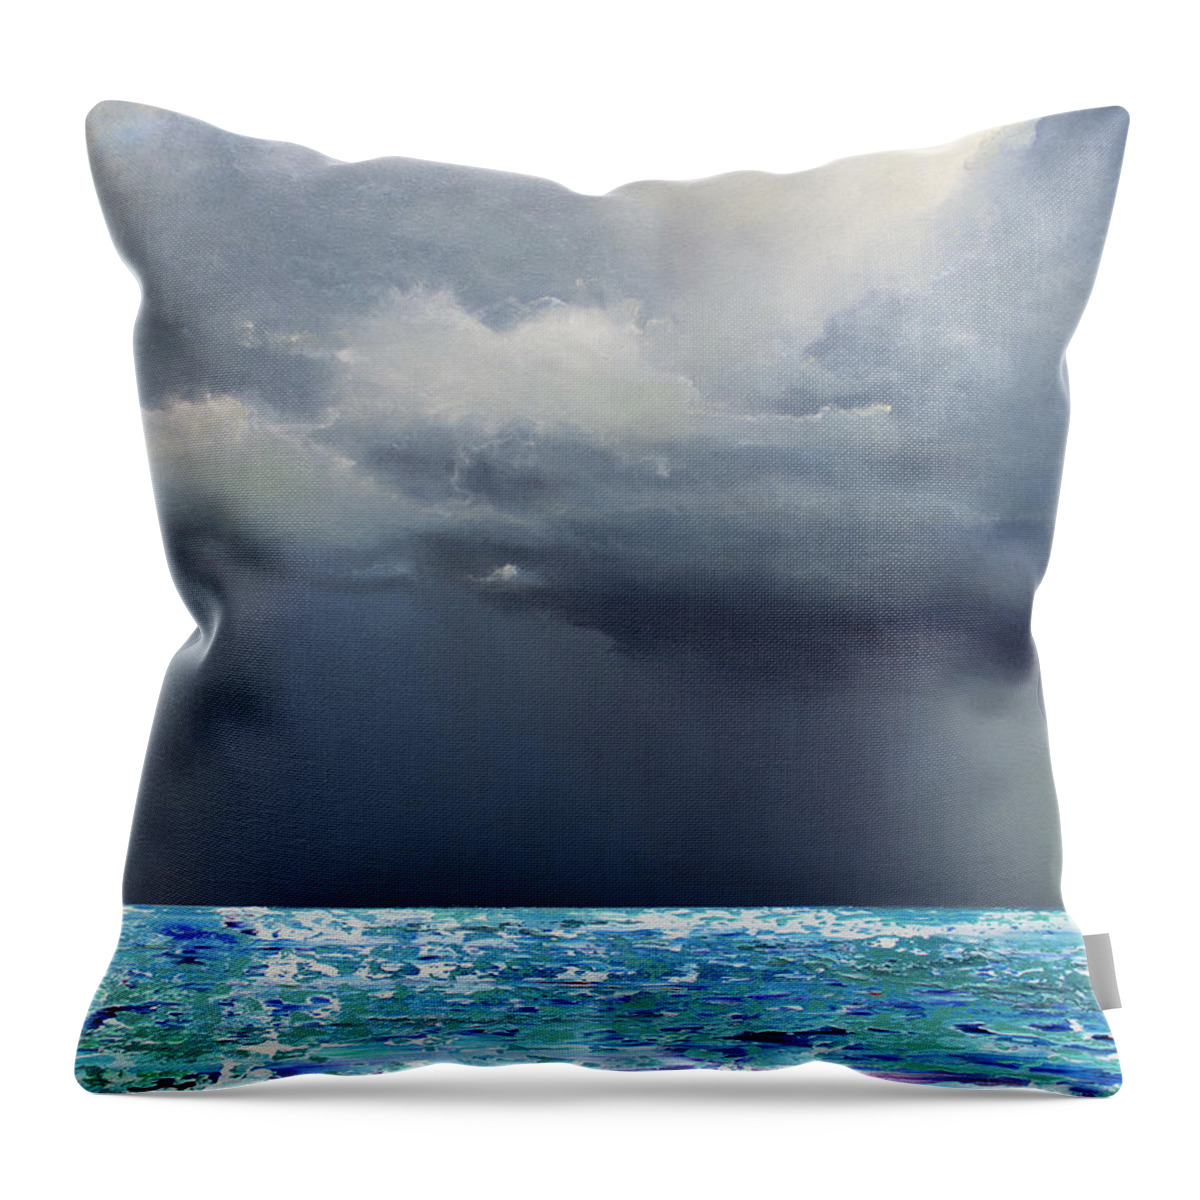 Derek Kaplan Throw Pillow featuring the painting Opt.26.19 'Storm' by Derek Kaplan